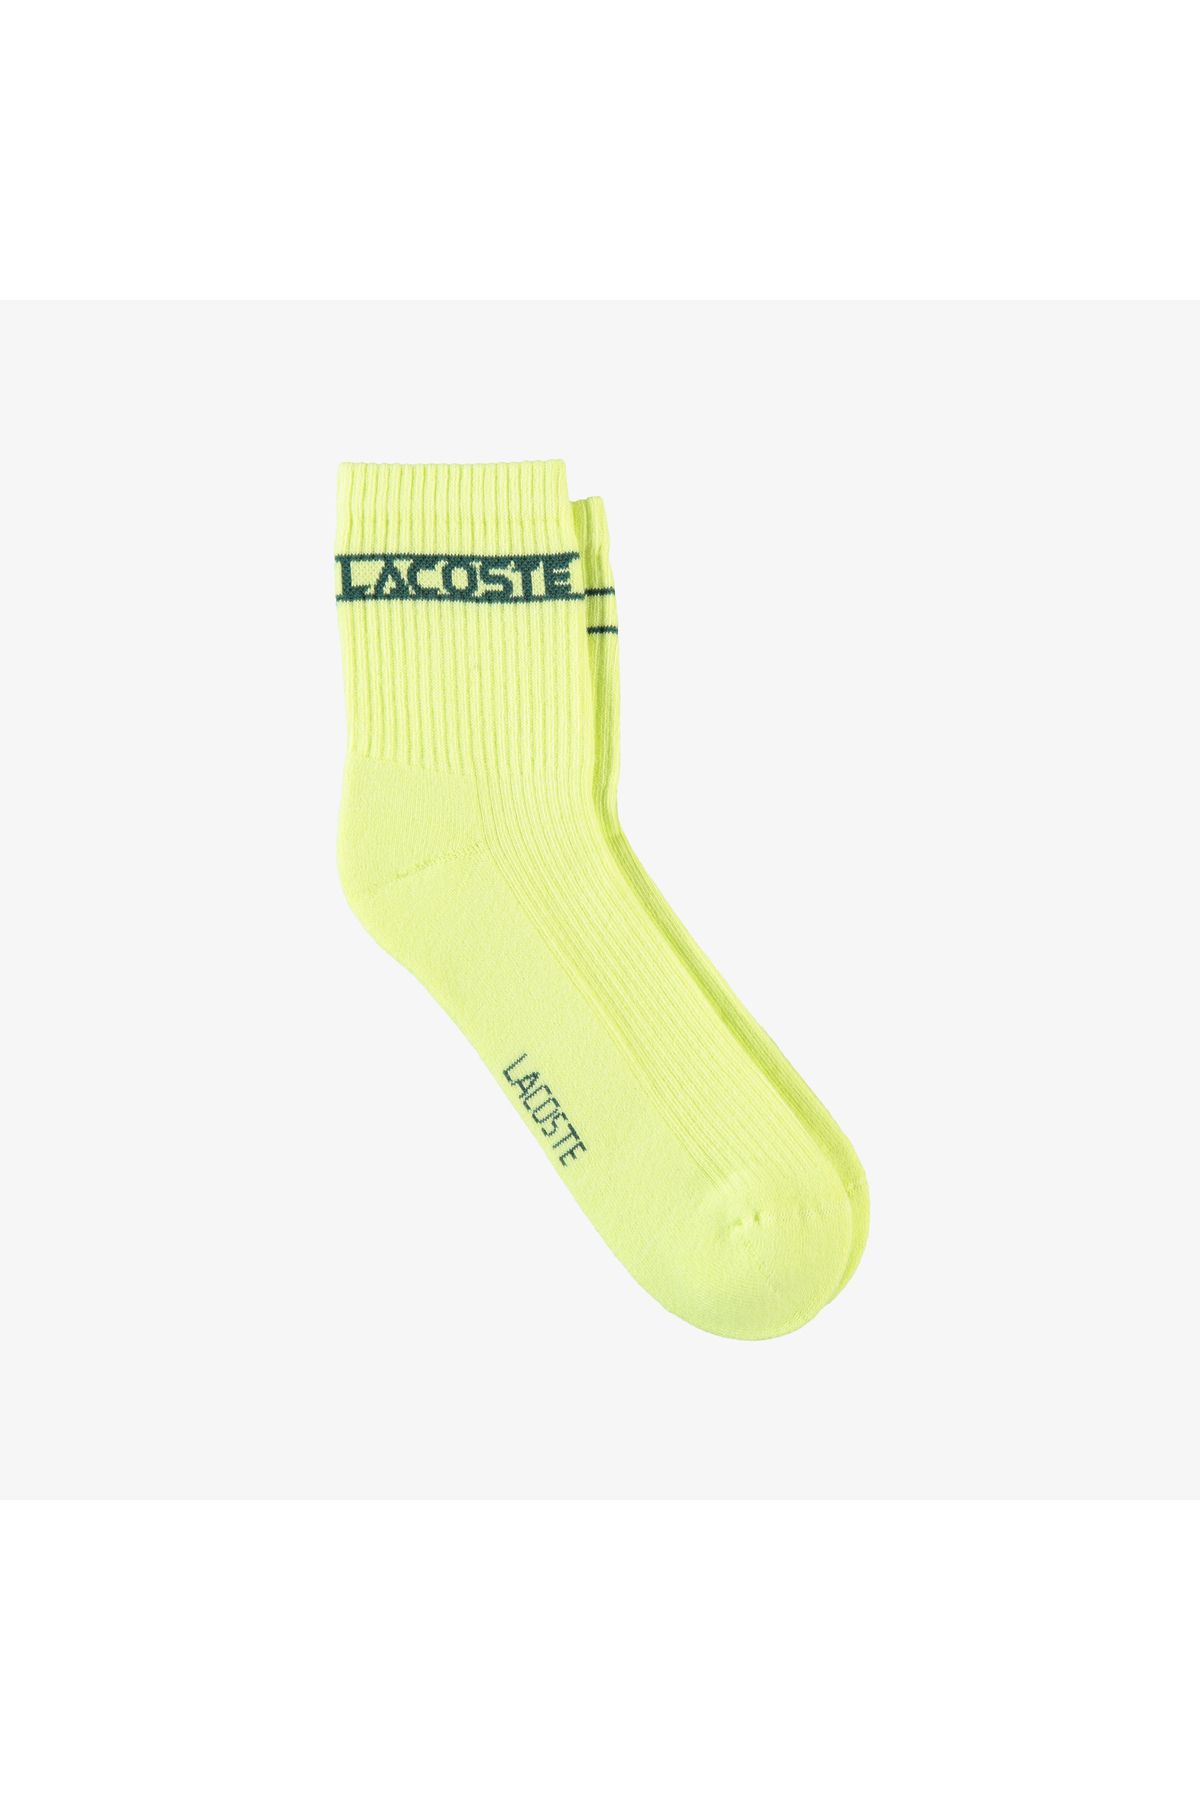 Lacoste Unisex Baskılı Sarı Çorap